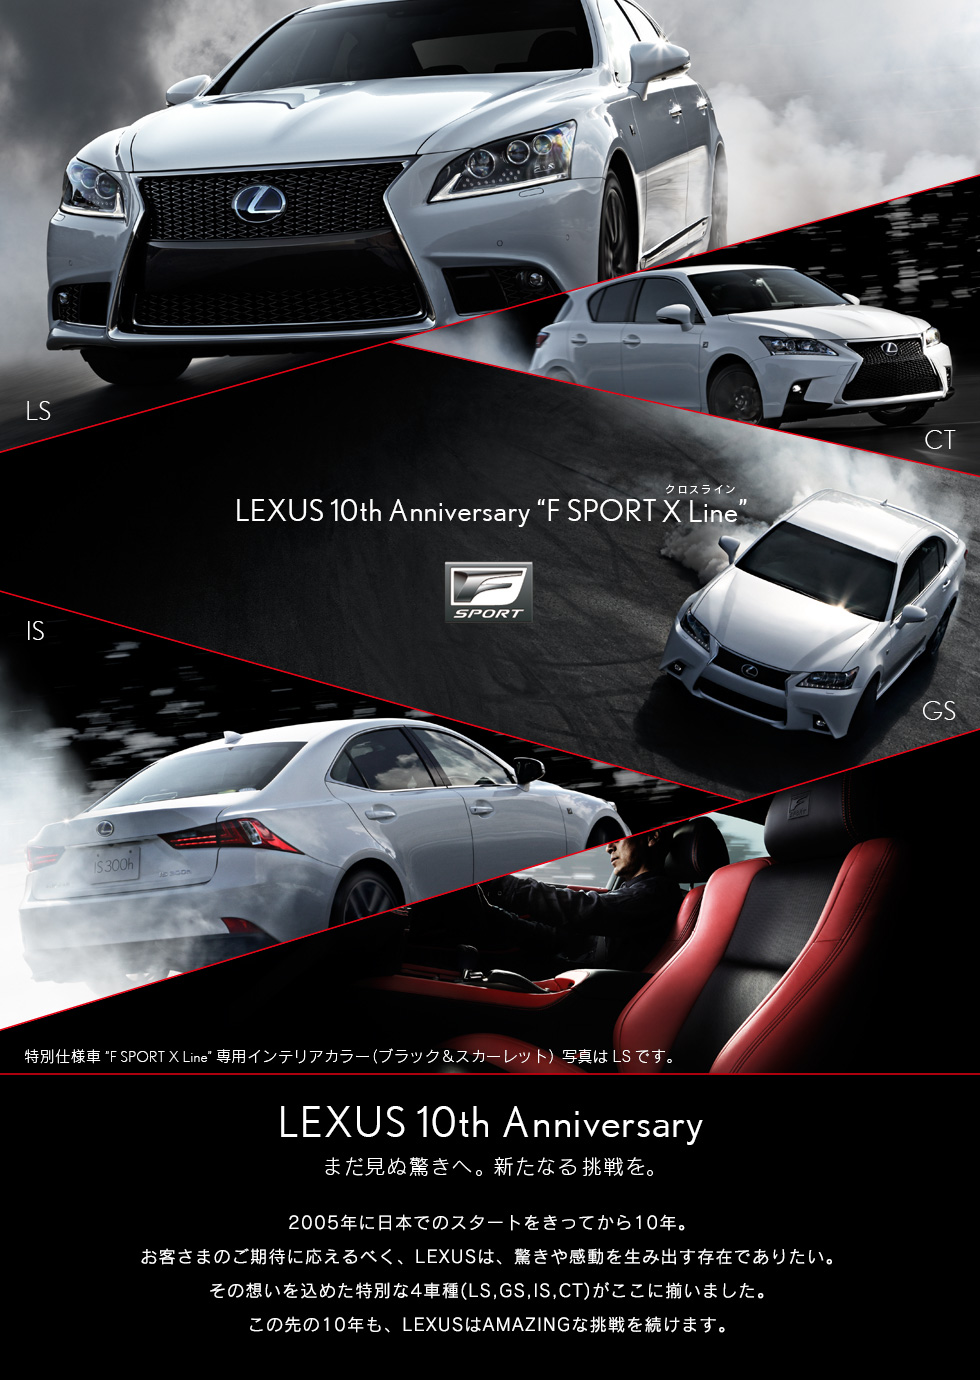 LEXUS u003e NEWS / EVENT u003e F SPORT X Line Debut Show